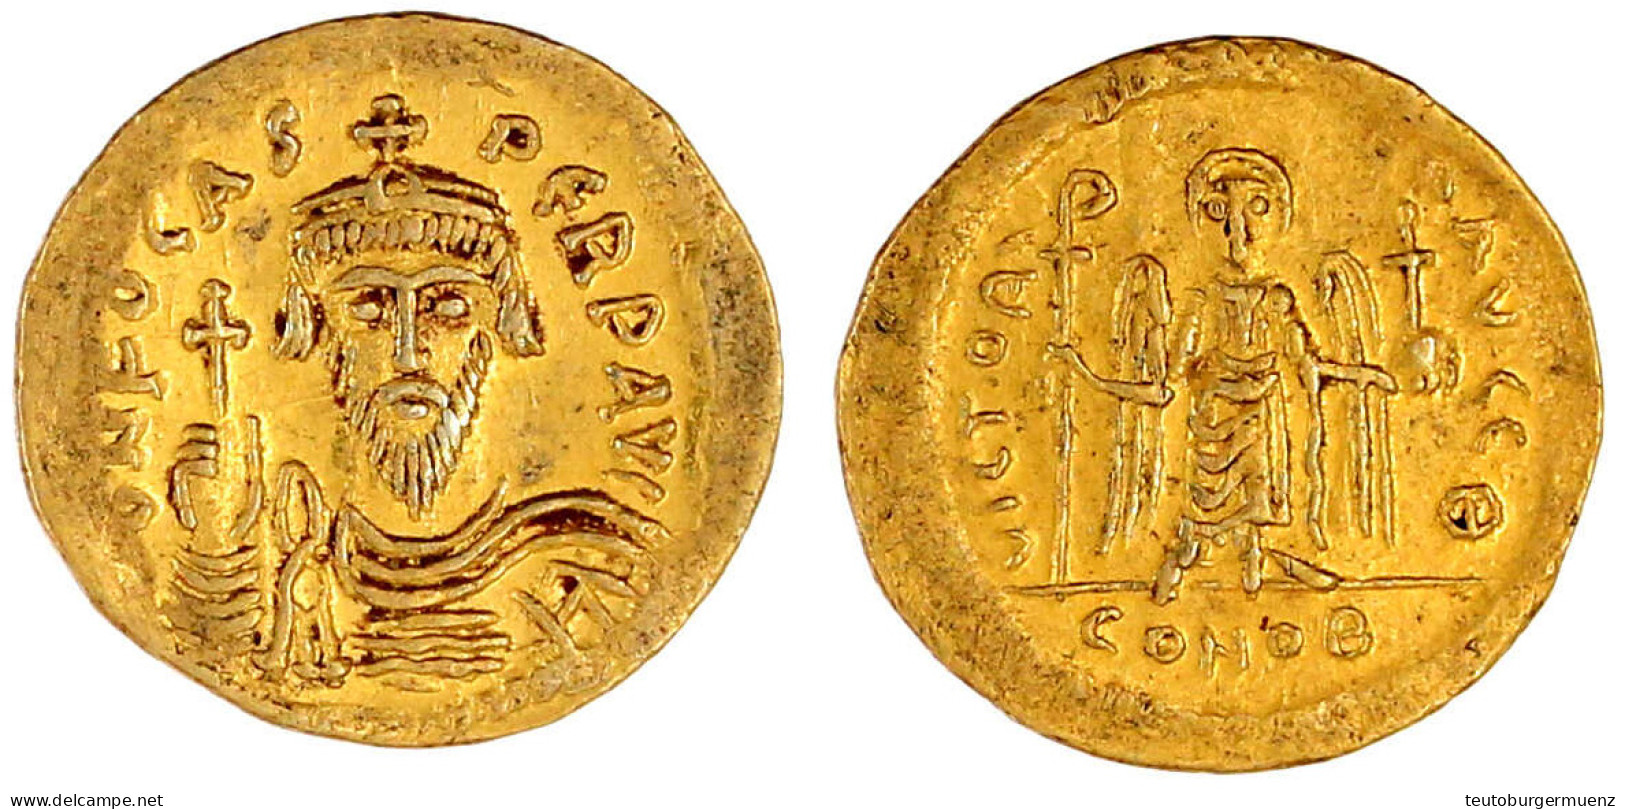 Solidus 602/610, Constantinopel, 9. Offizin. 4,49 G. Vorzüglich Exemplar Münzzentrum Rheinland Auktion 194, Nr. 1112. Se - Byzantine